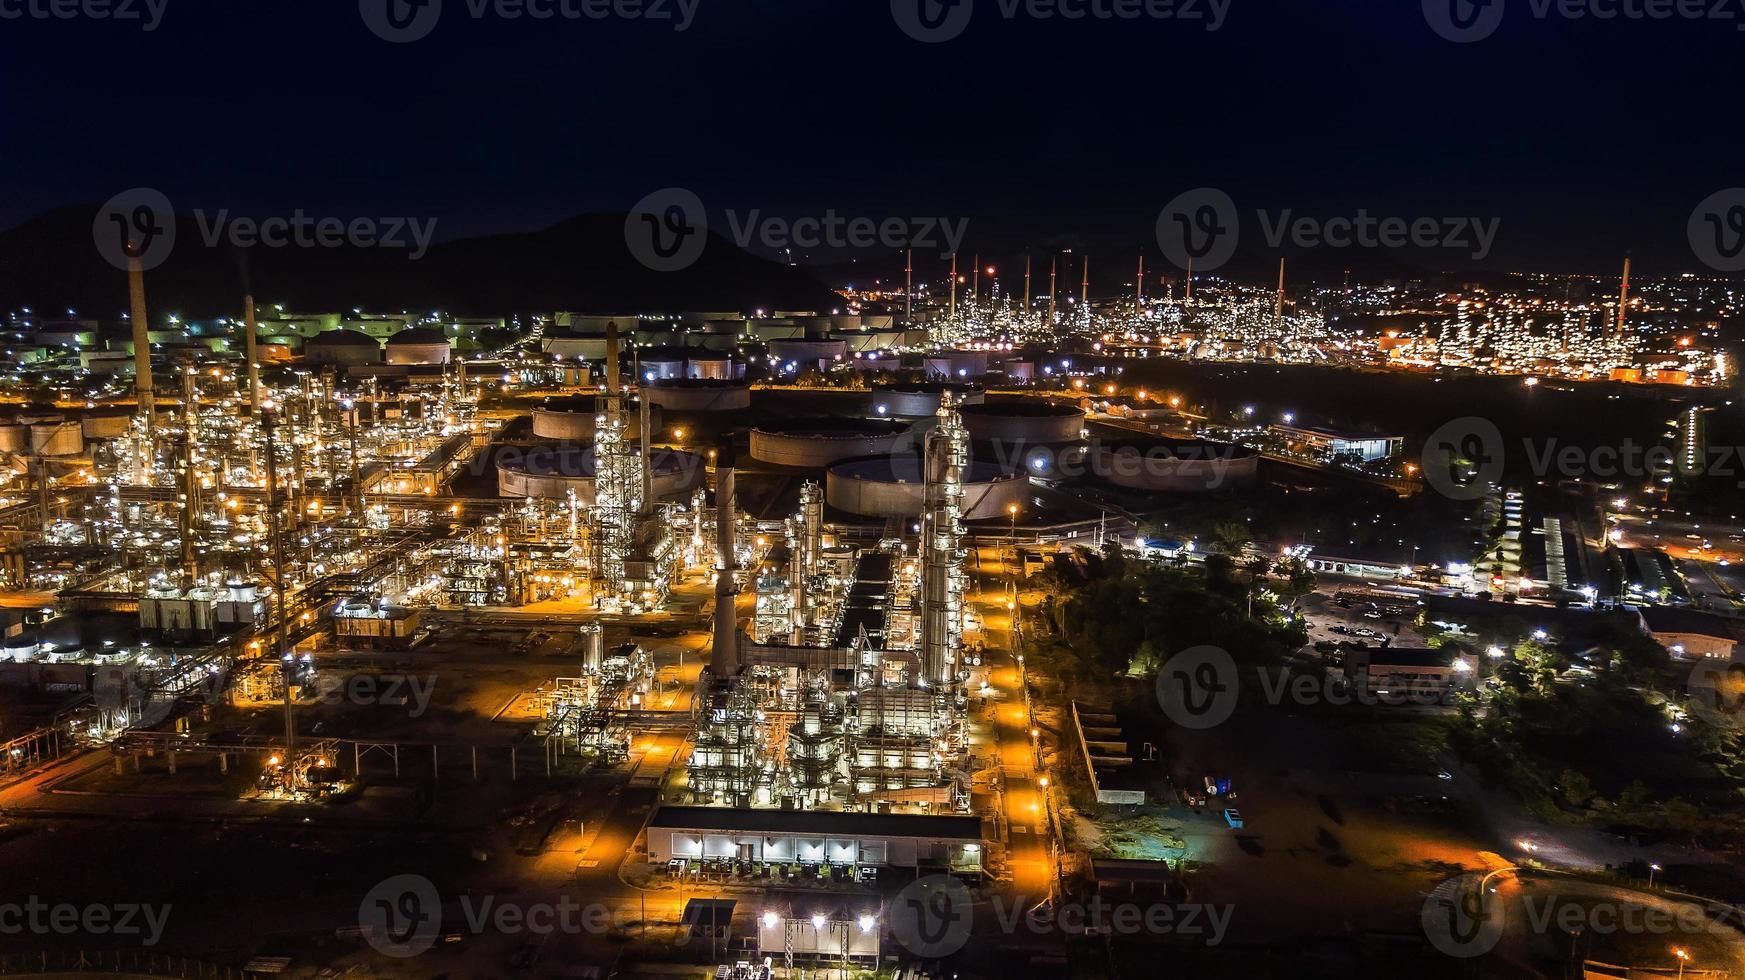 Ölraffinerieindustrie nachts foto